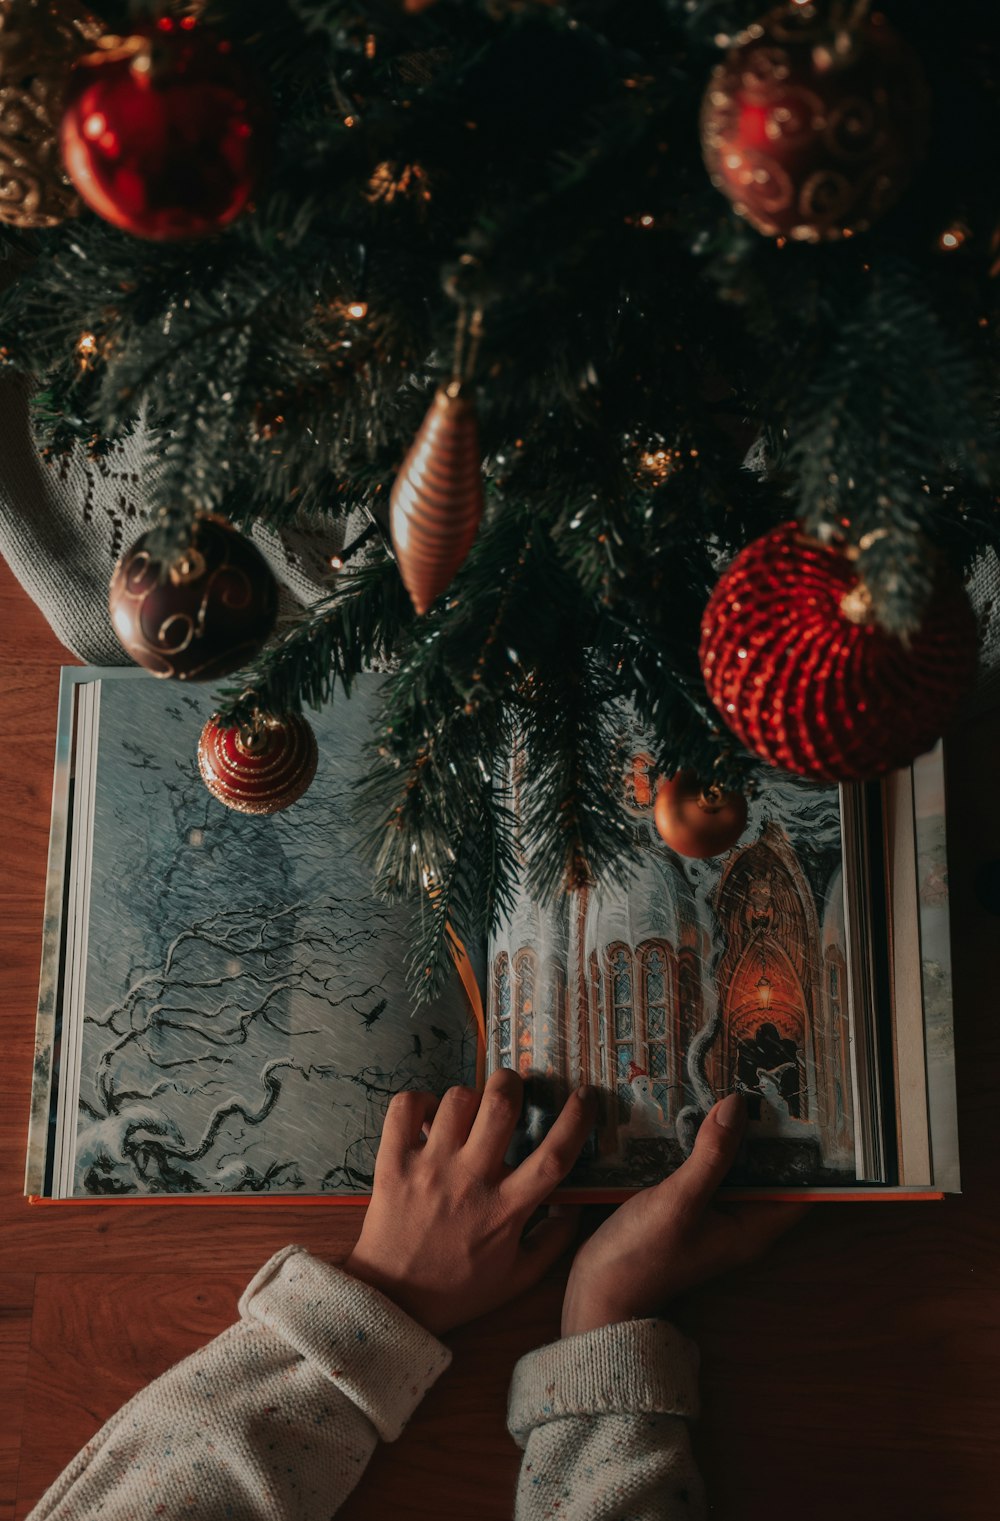 Una persona está leyendo un libro debajo de un árbol de Navidad